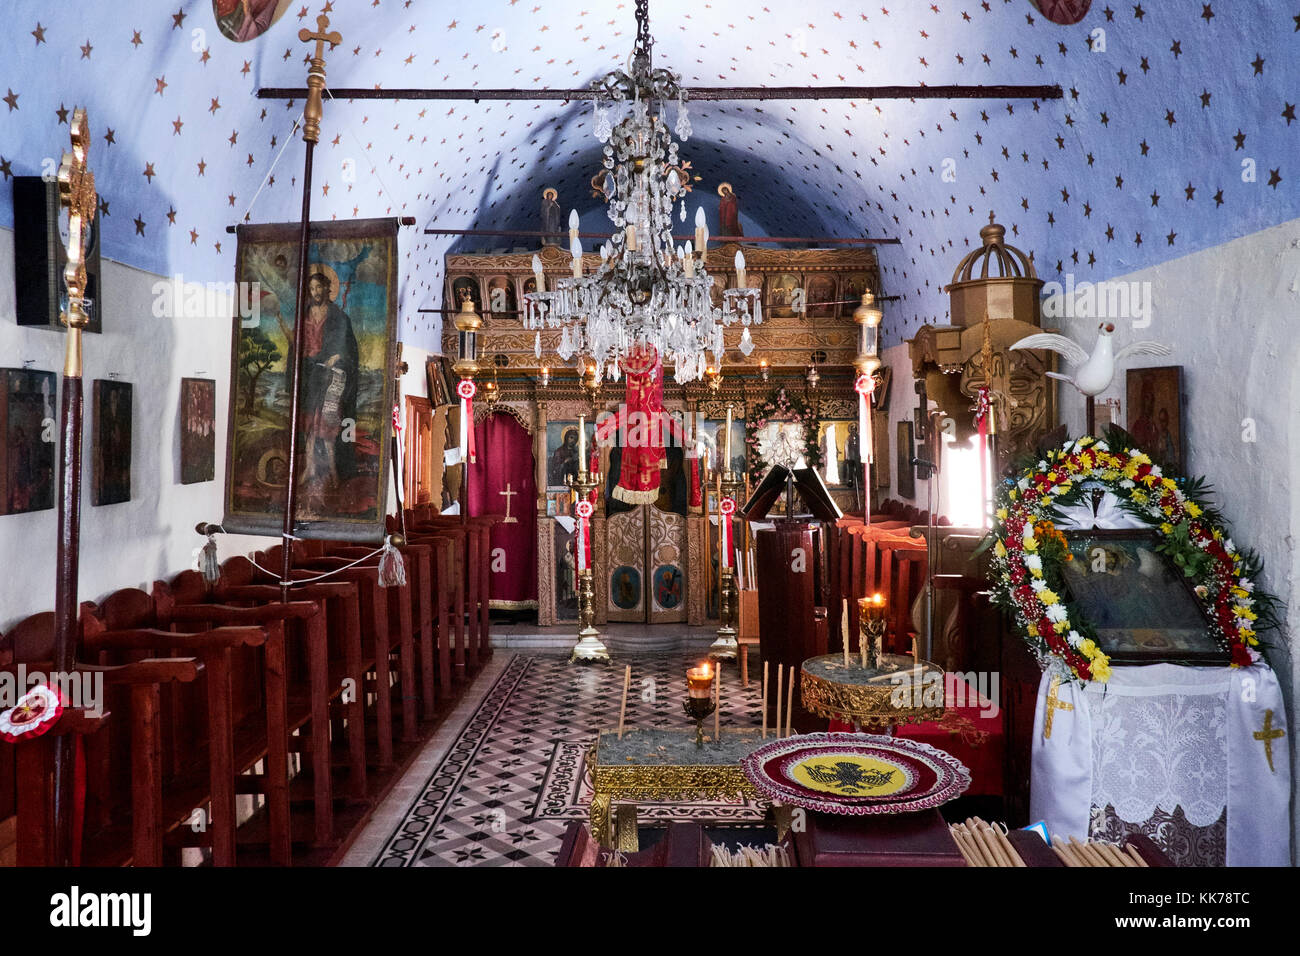 Das Innere der Griechisch-orthodoxen Kirche, Ikaria, Griechenland Stockfoto